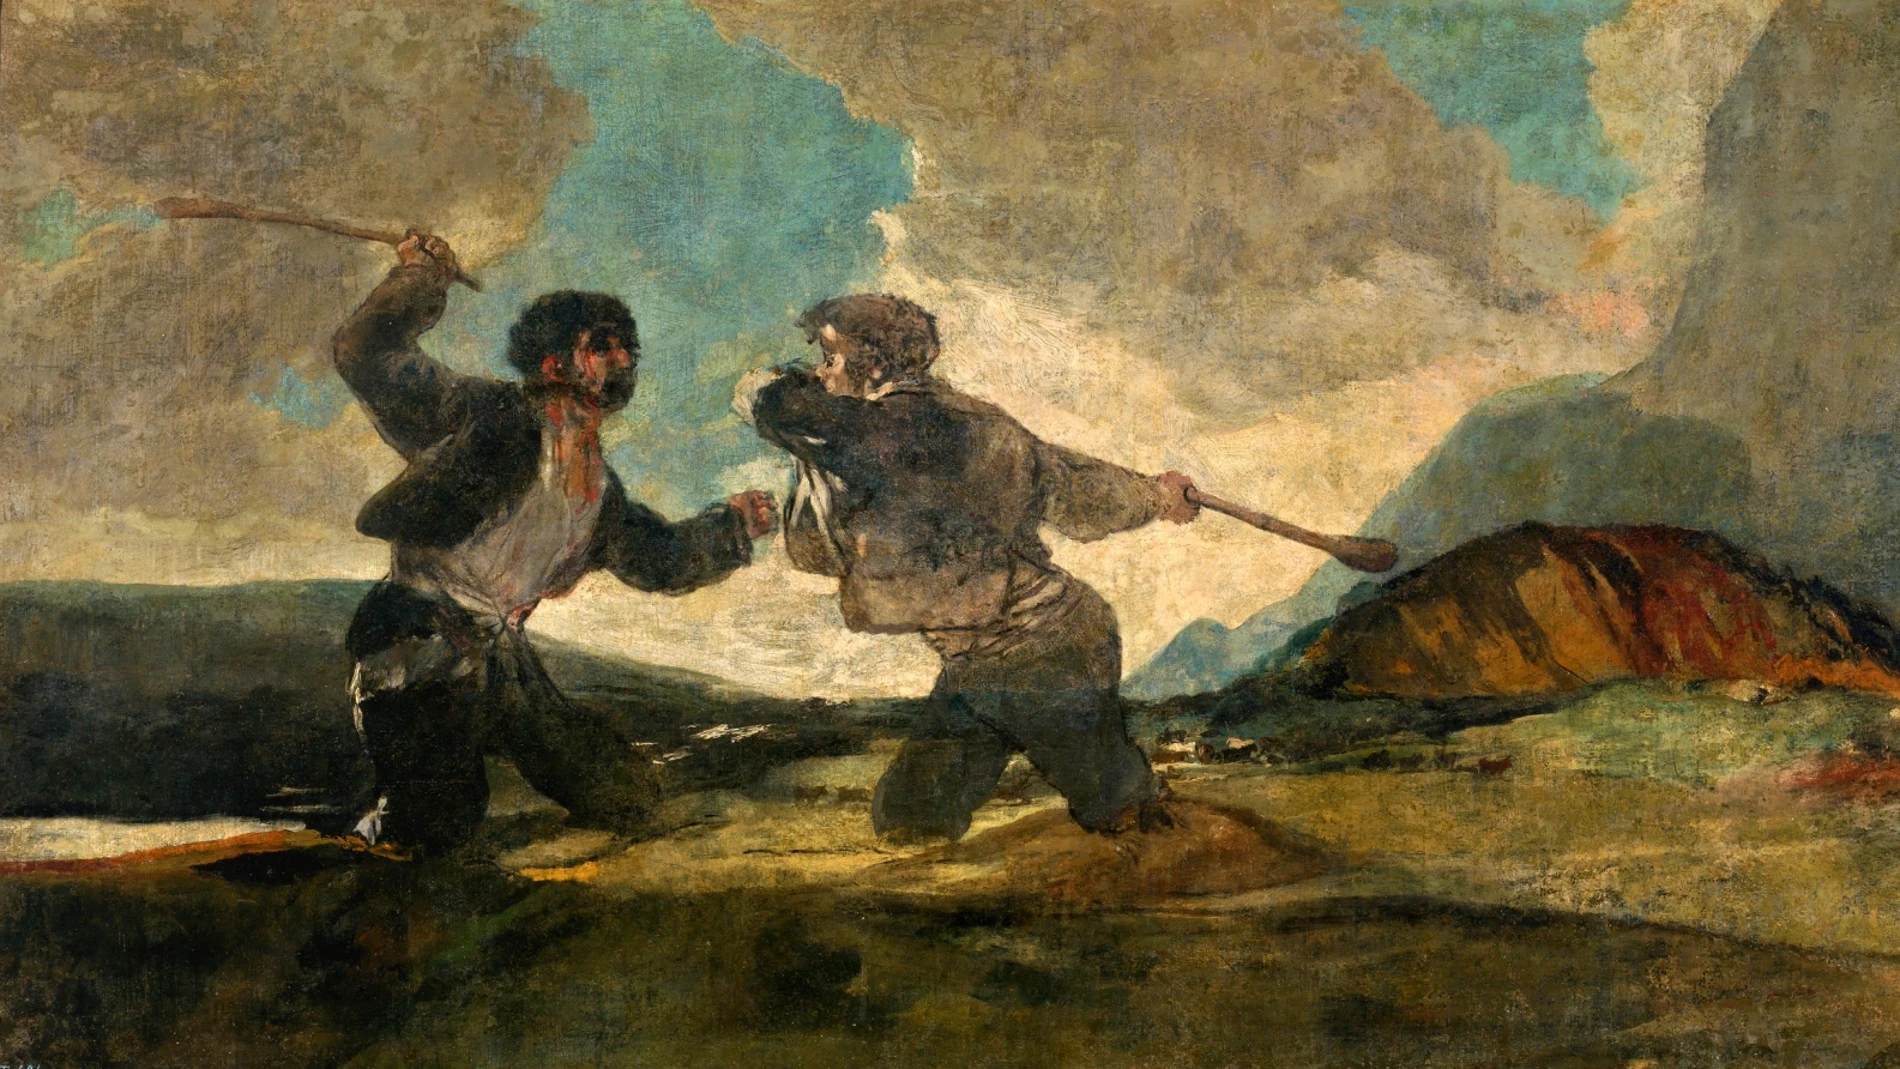 El "Duelo a garrotazos", de Francisco de Goya, escenifica tristemente la Historia de España